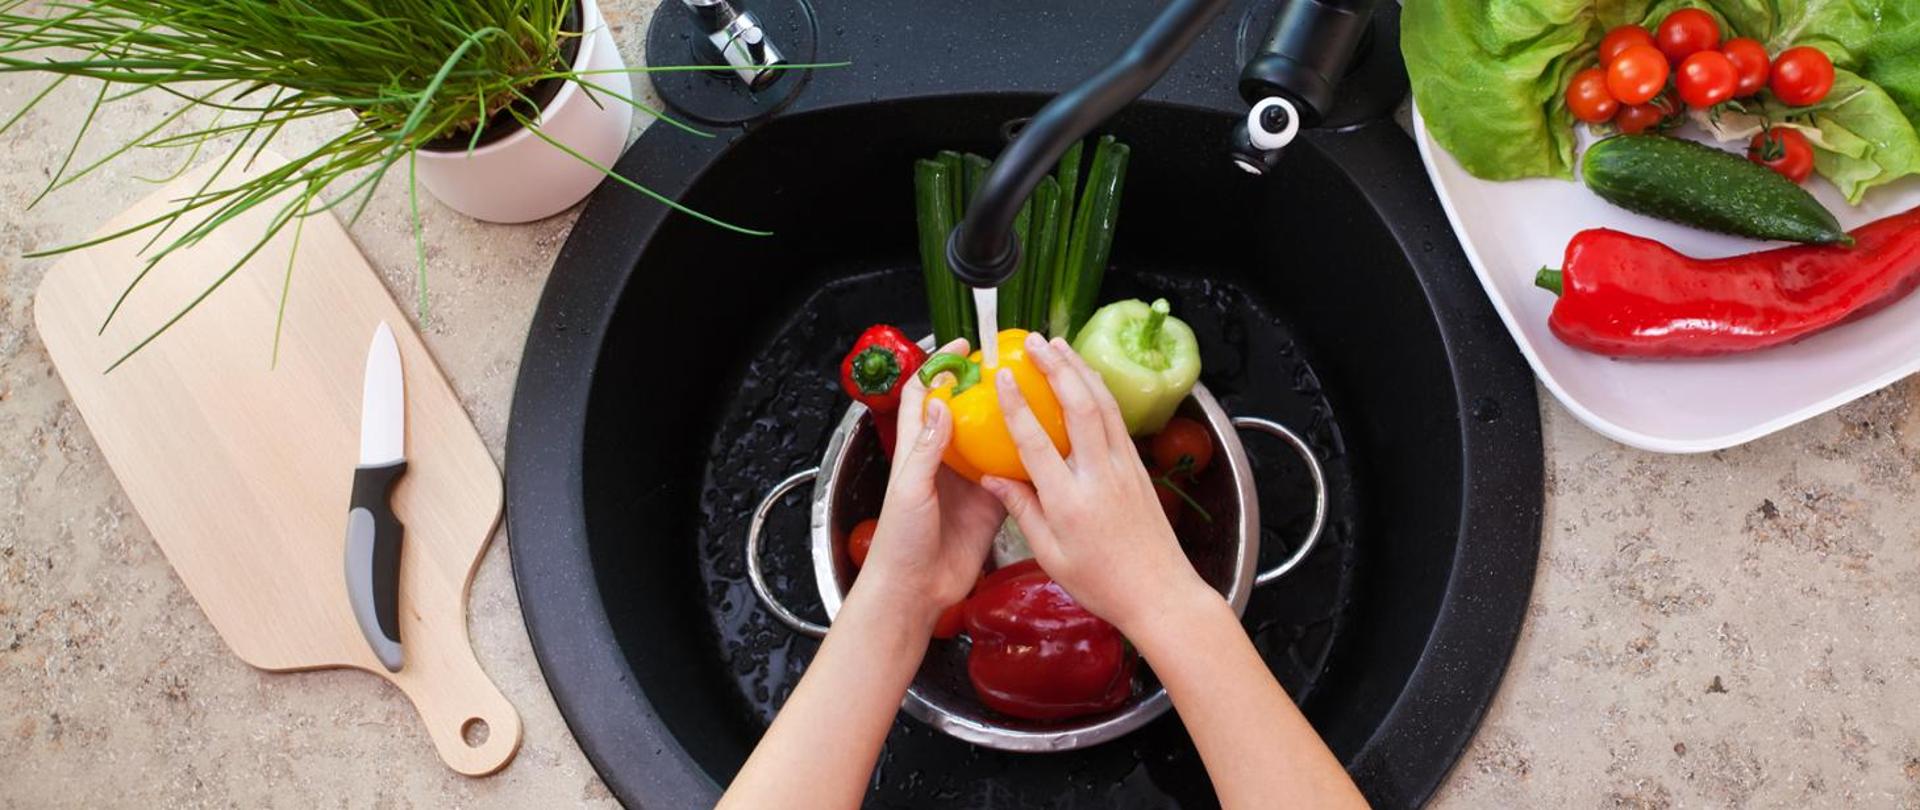 Na zdjęciu widoczne dłonie myjące owoce i warzywa pod bieżącą wodą w zlewie kuchennym.